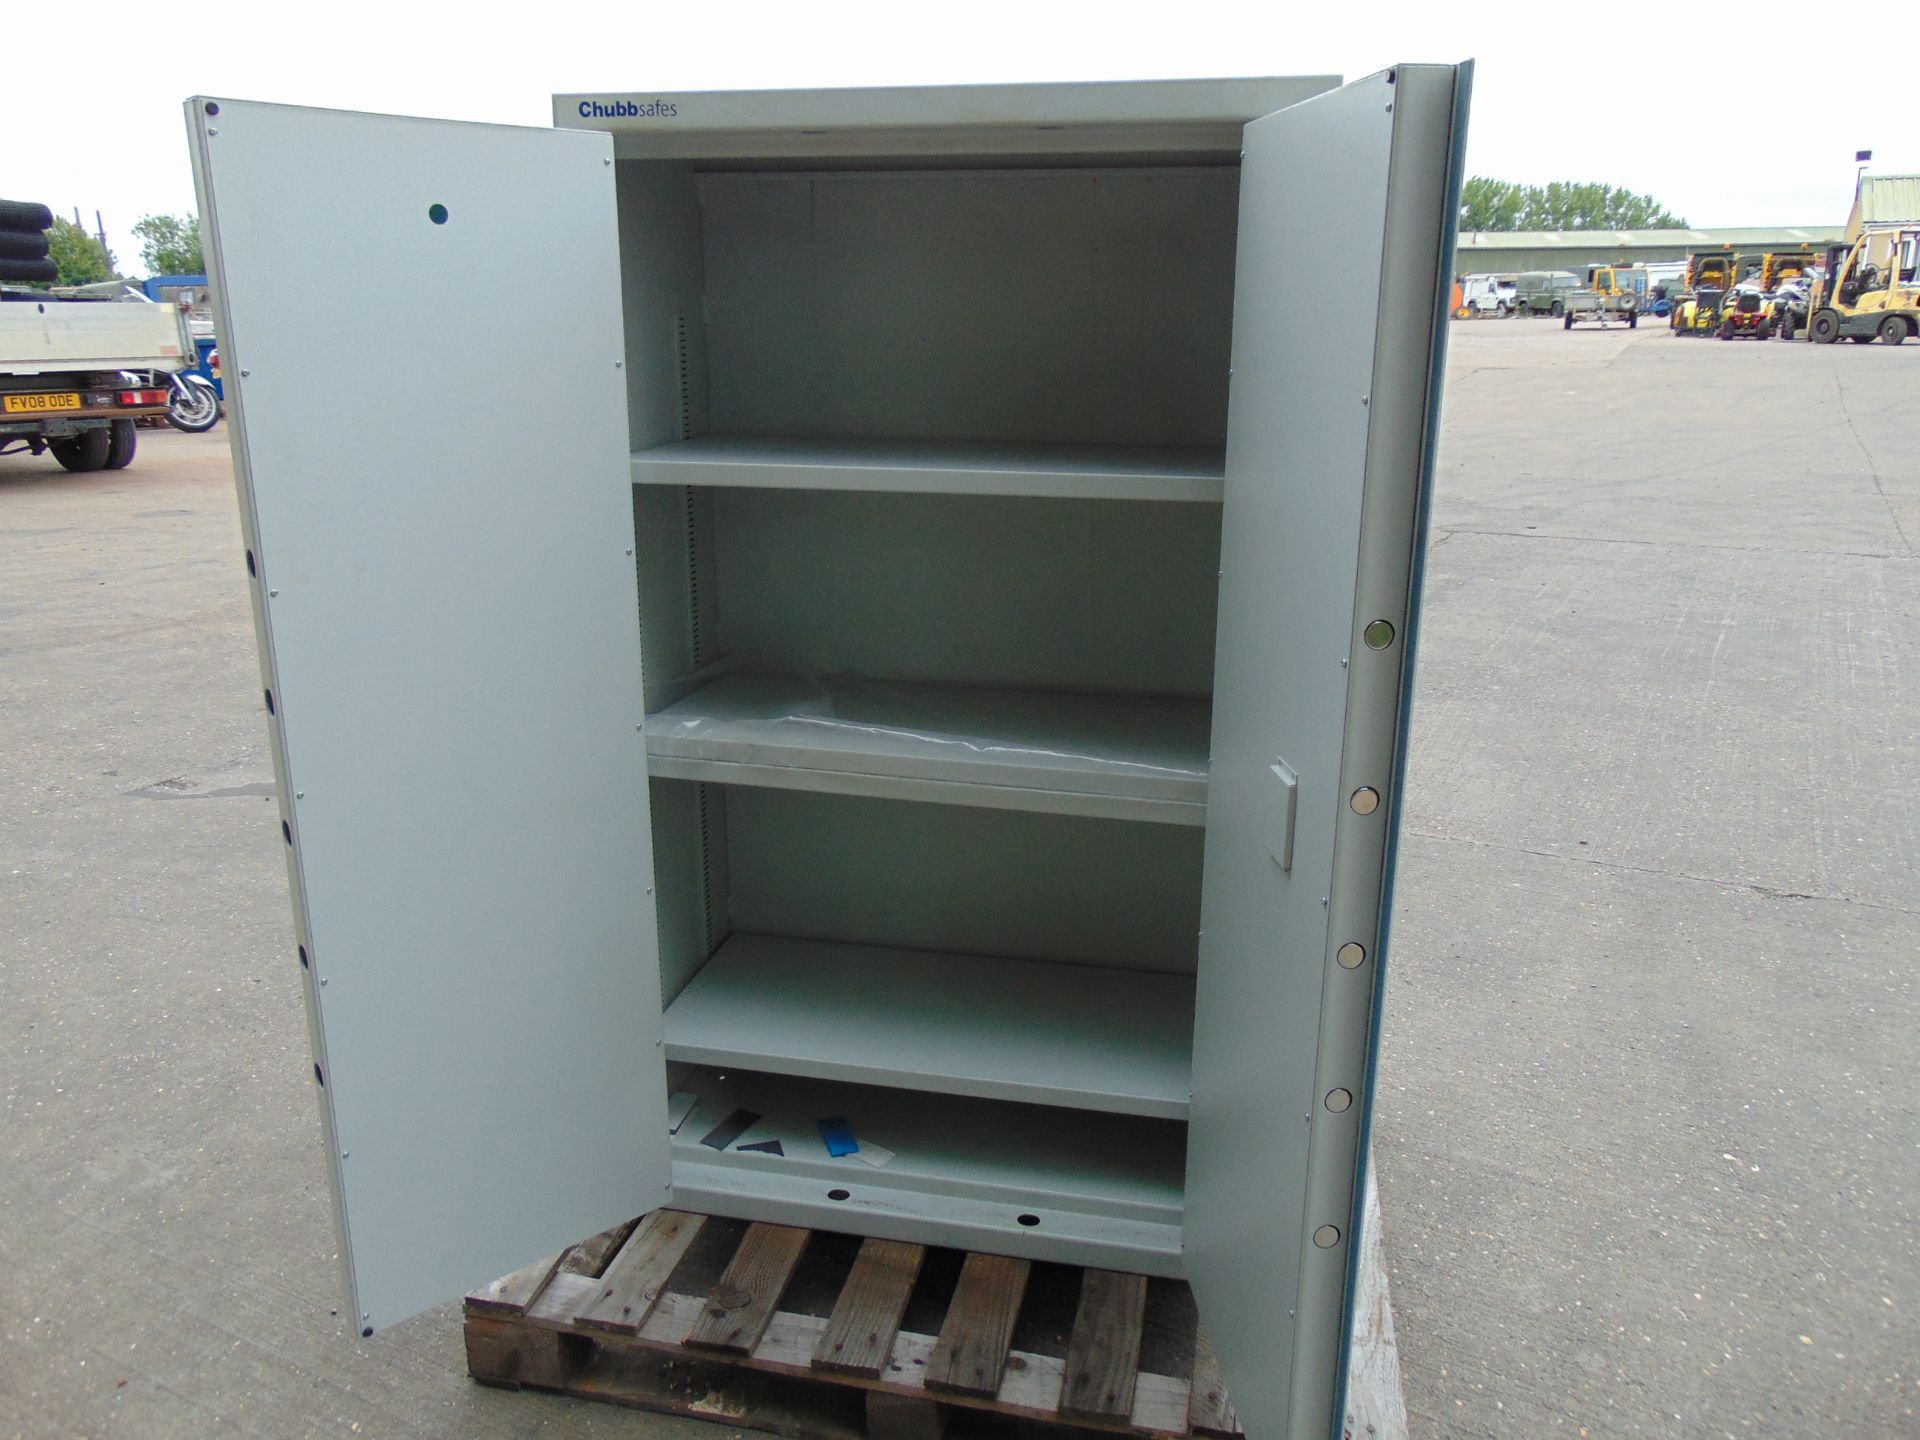 Force Guard Chubb Cabinet Safe 1.5m x 0.9m x 0.45m, 140kgs, 504 litre capacity c/w keys etc - Image 6 of 7